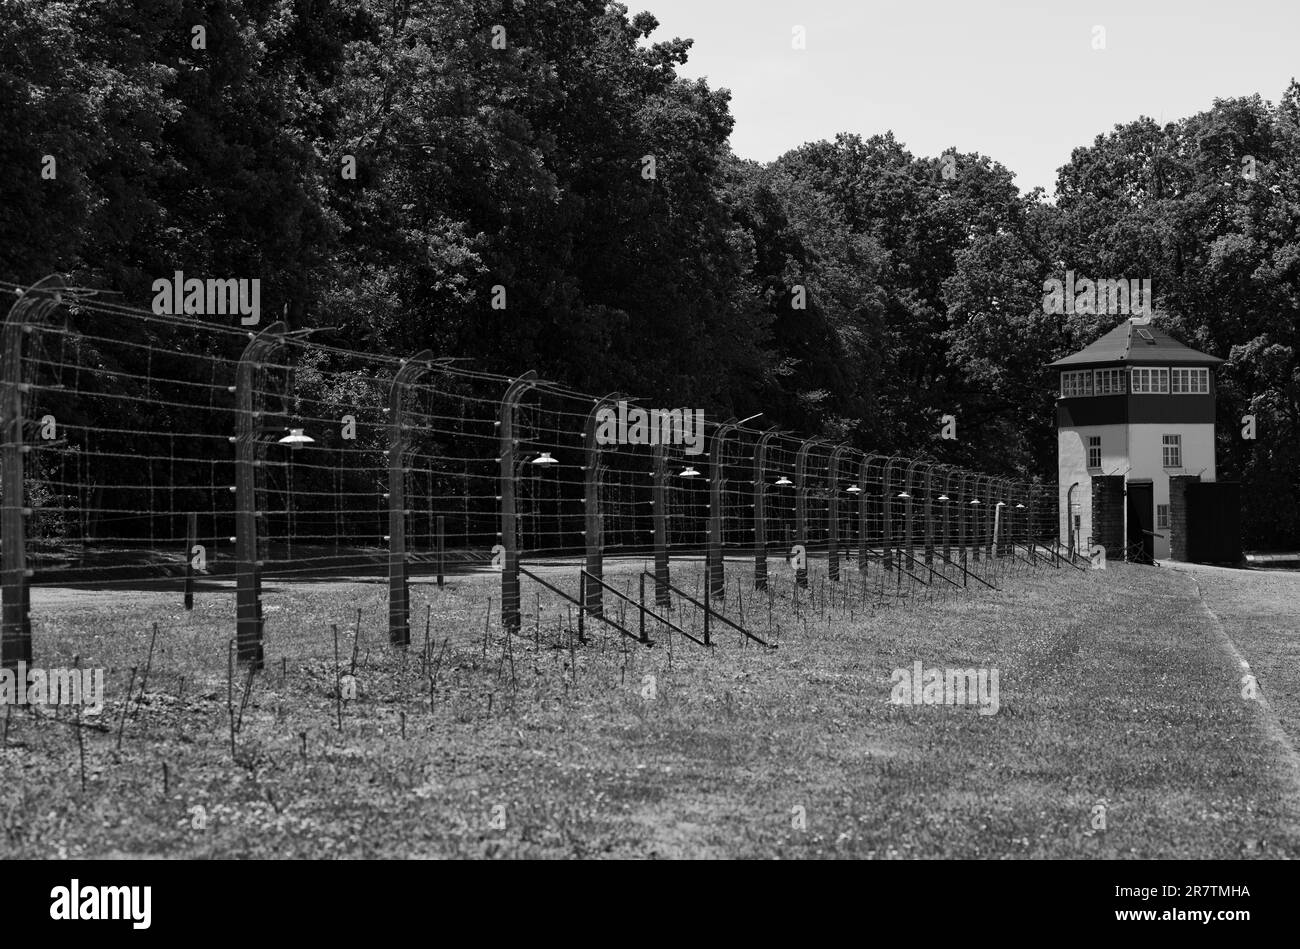 Clôture de camp reconstruite avec tour de guet, ancienne forêt de hêtres de camp de concentration, aujourd'hui site commémoratif, noir et blanc, Weimar, Thuringe, Allemagne Banque D'Images